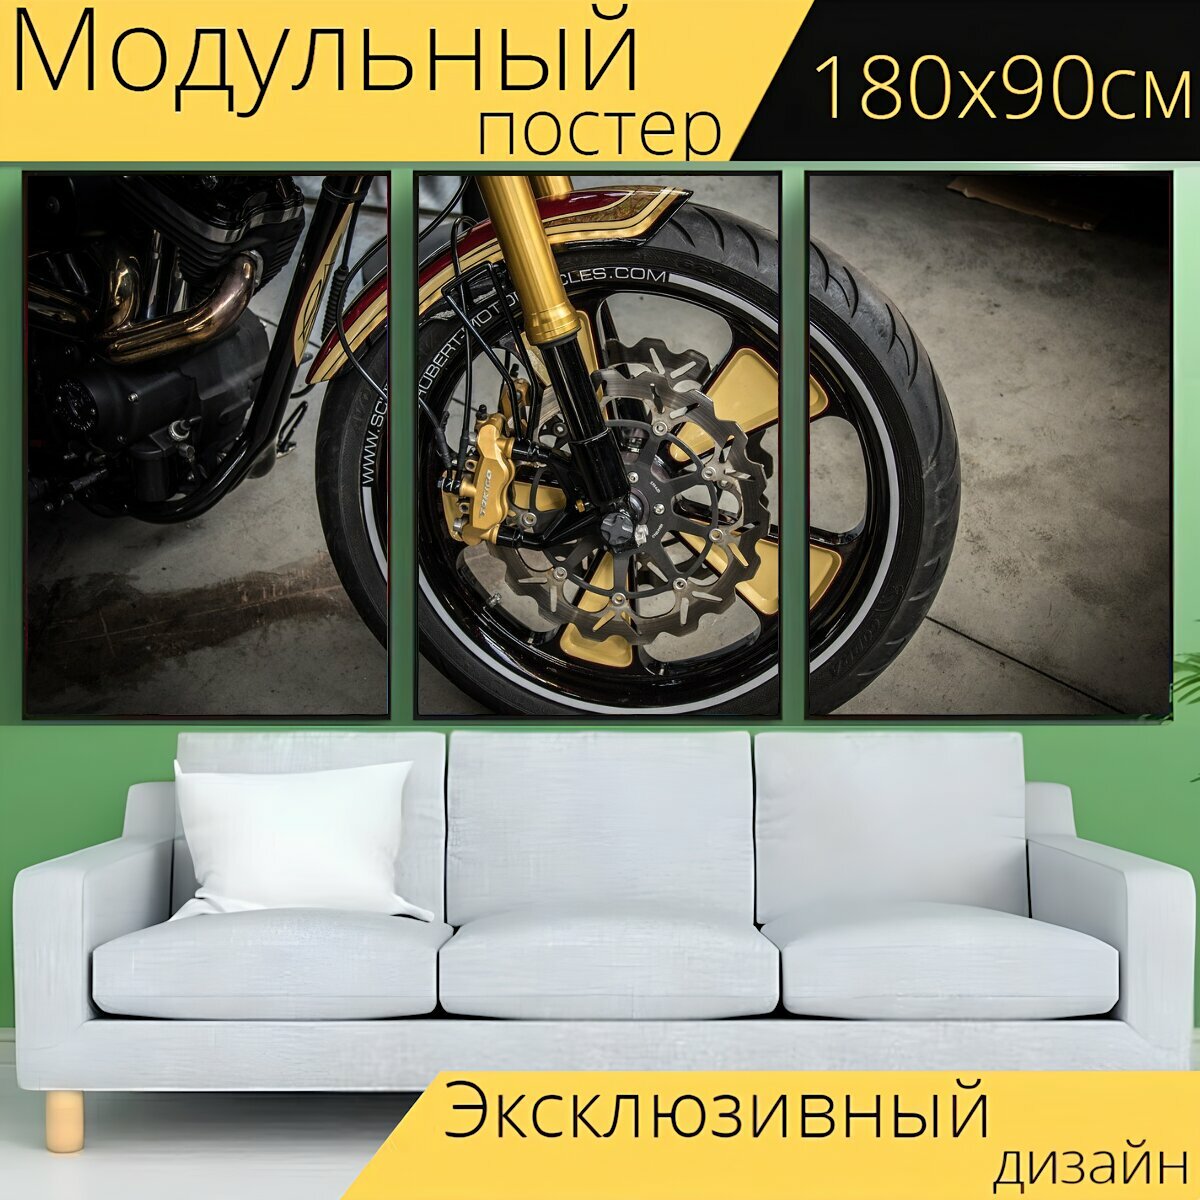 Модульный постер "Мотоцикл обод, колесные диски дизайн, дисковый тормоз" 180 x 90 см. для интерьера